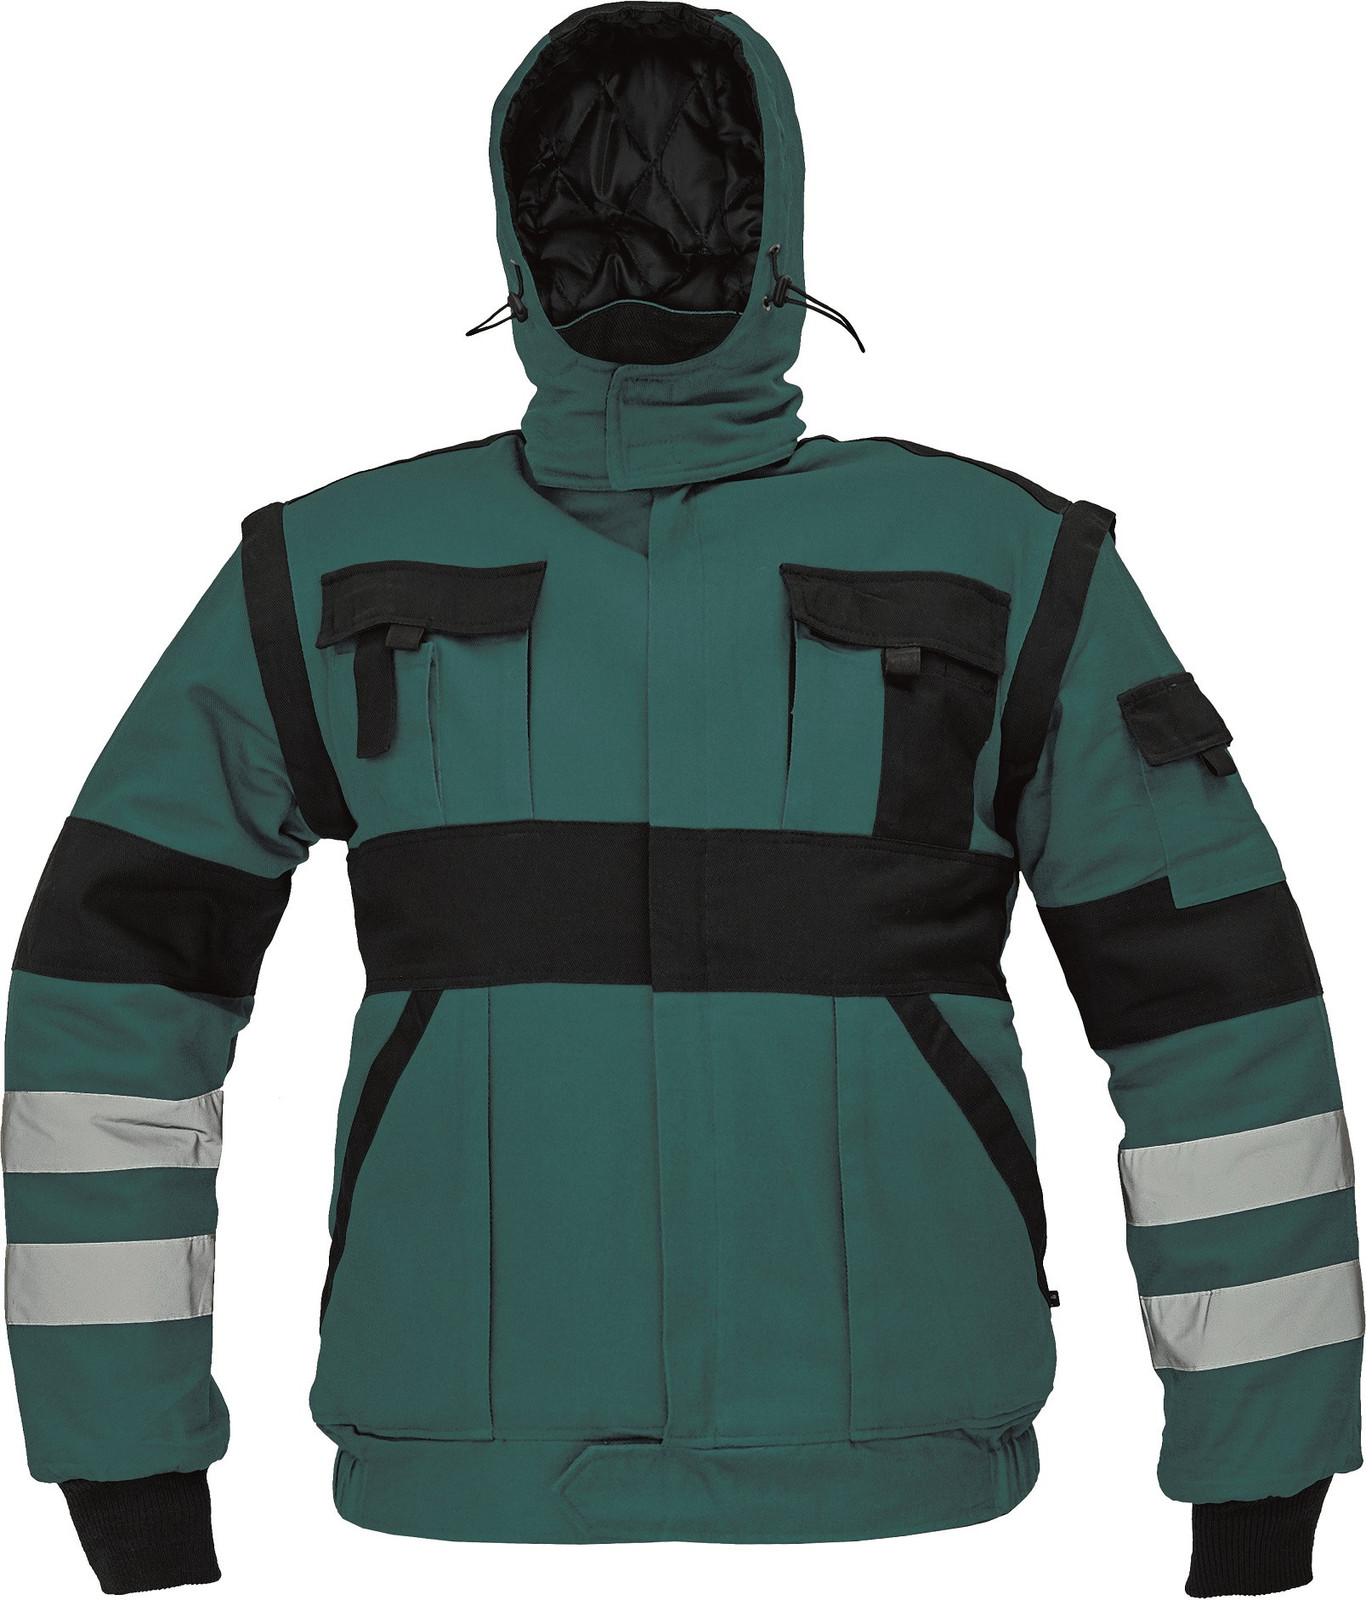 Zateplená montérková bunda Max Winter s reflexnými pruhmi 2v1 - veľkosť: 56, farba: zelená/čierna